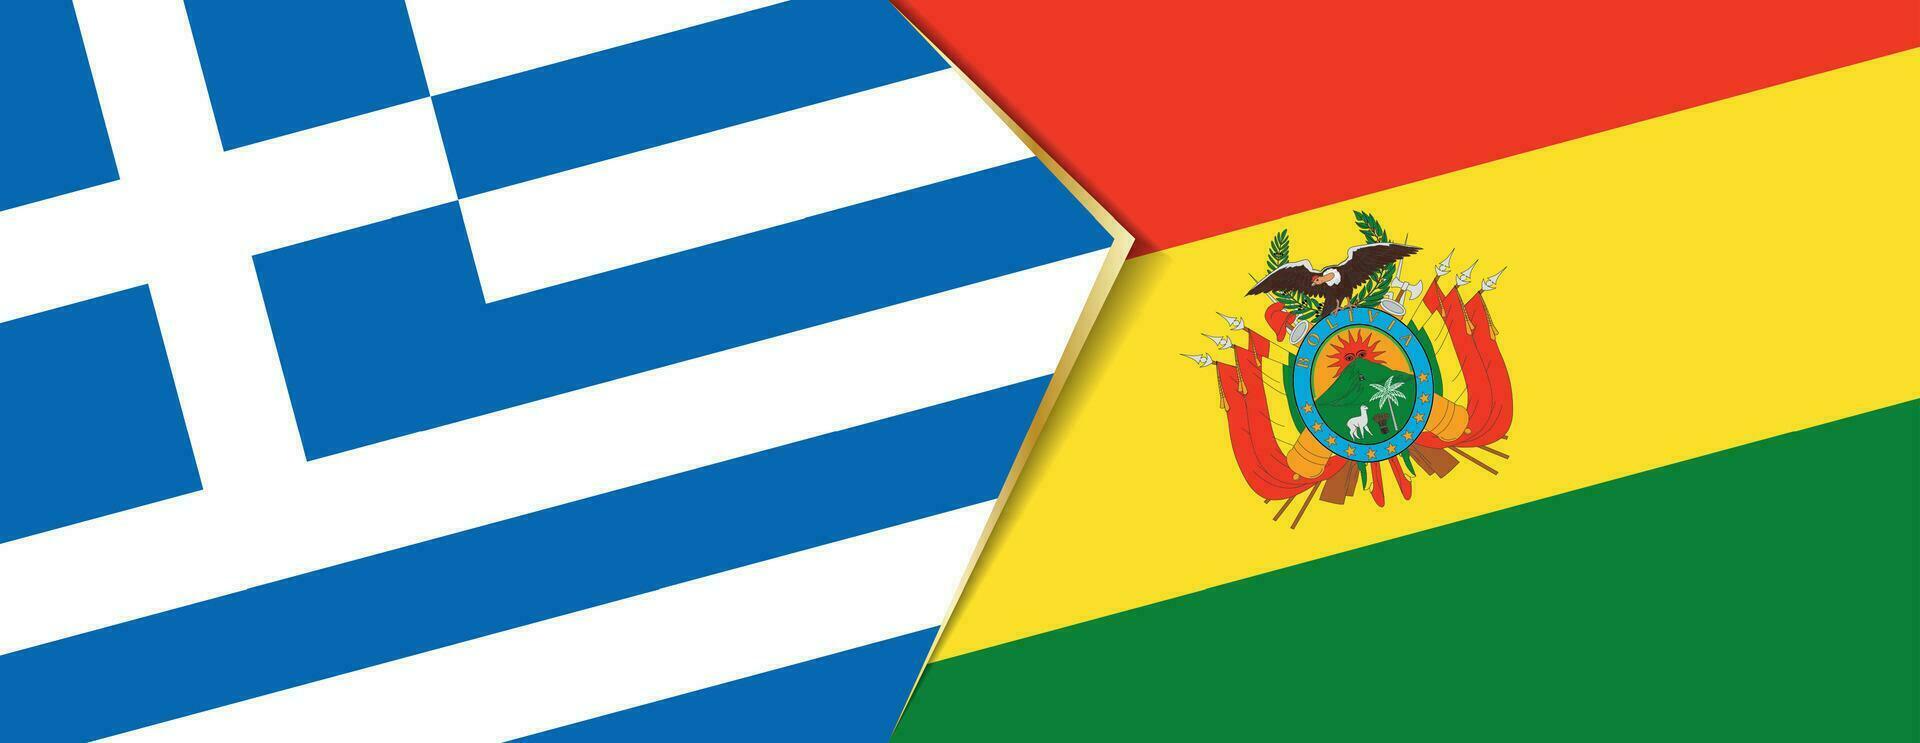 Griechenland und Bolivien Flaggen, zwei Vektor Flaggen.